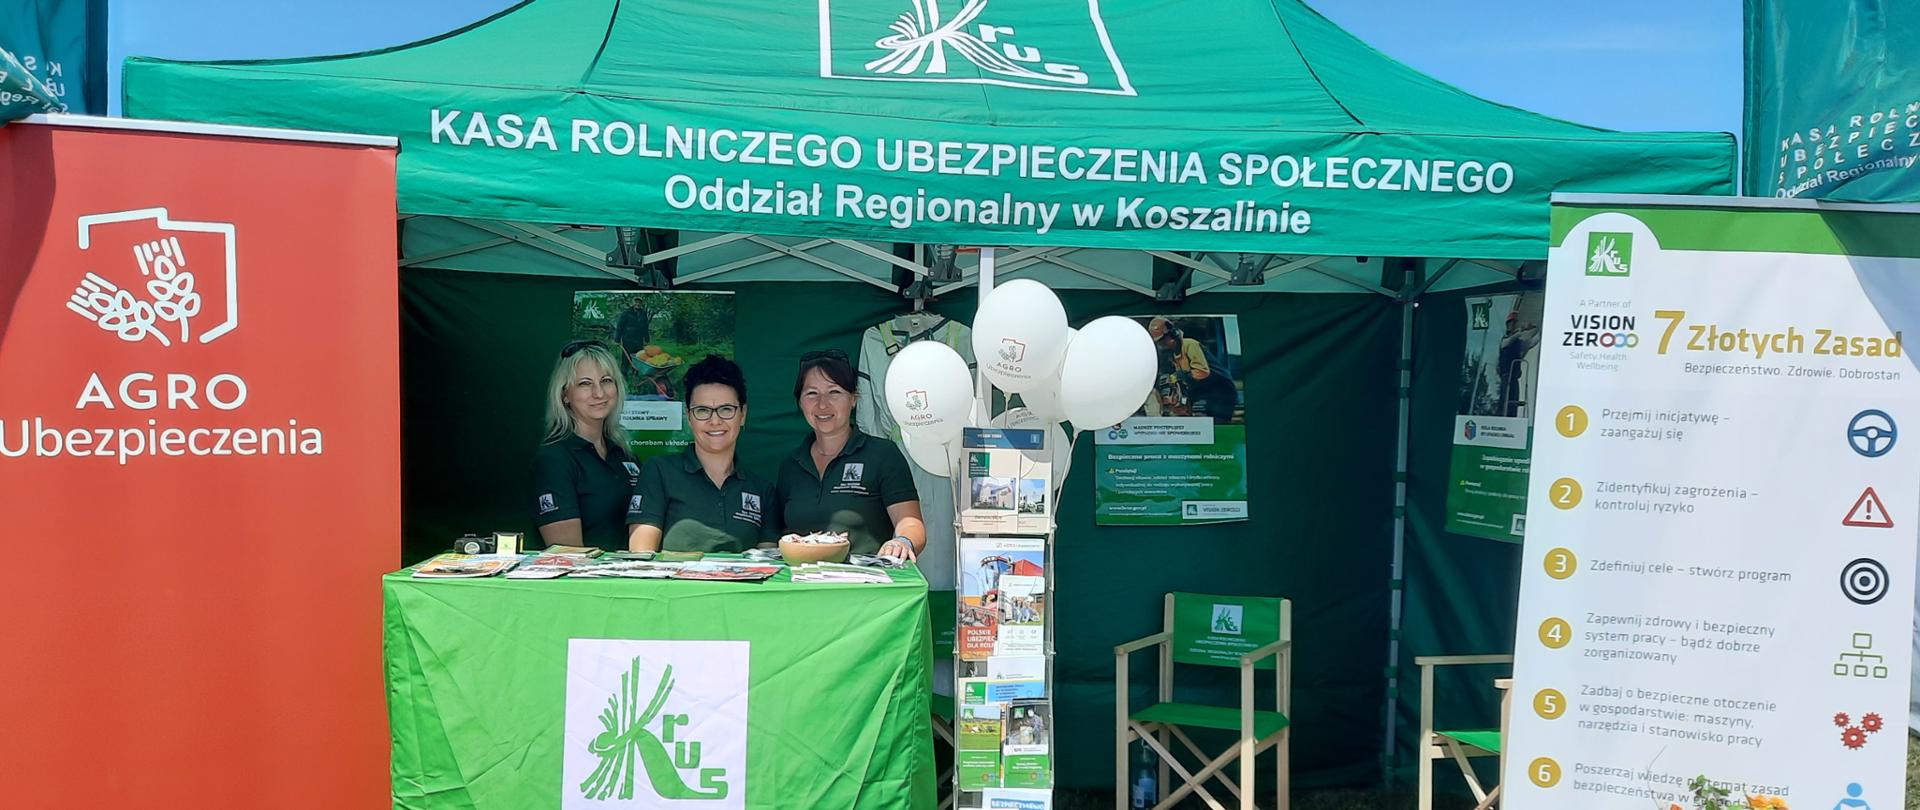 Zielony namiot Oddziału regionalnego KRUS w Koszalinie. Przy stoisku za pulpitem trzy kobiety pracownice OR w Koszalinie, obok ulotki i białe balony, po bokach baner Agro - Ubezpieczenia po lewej i Vision Zero KRUS - po prawej.